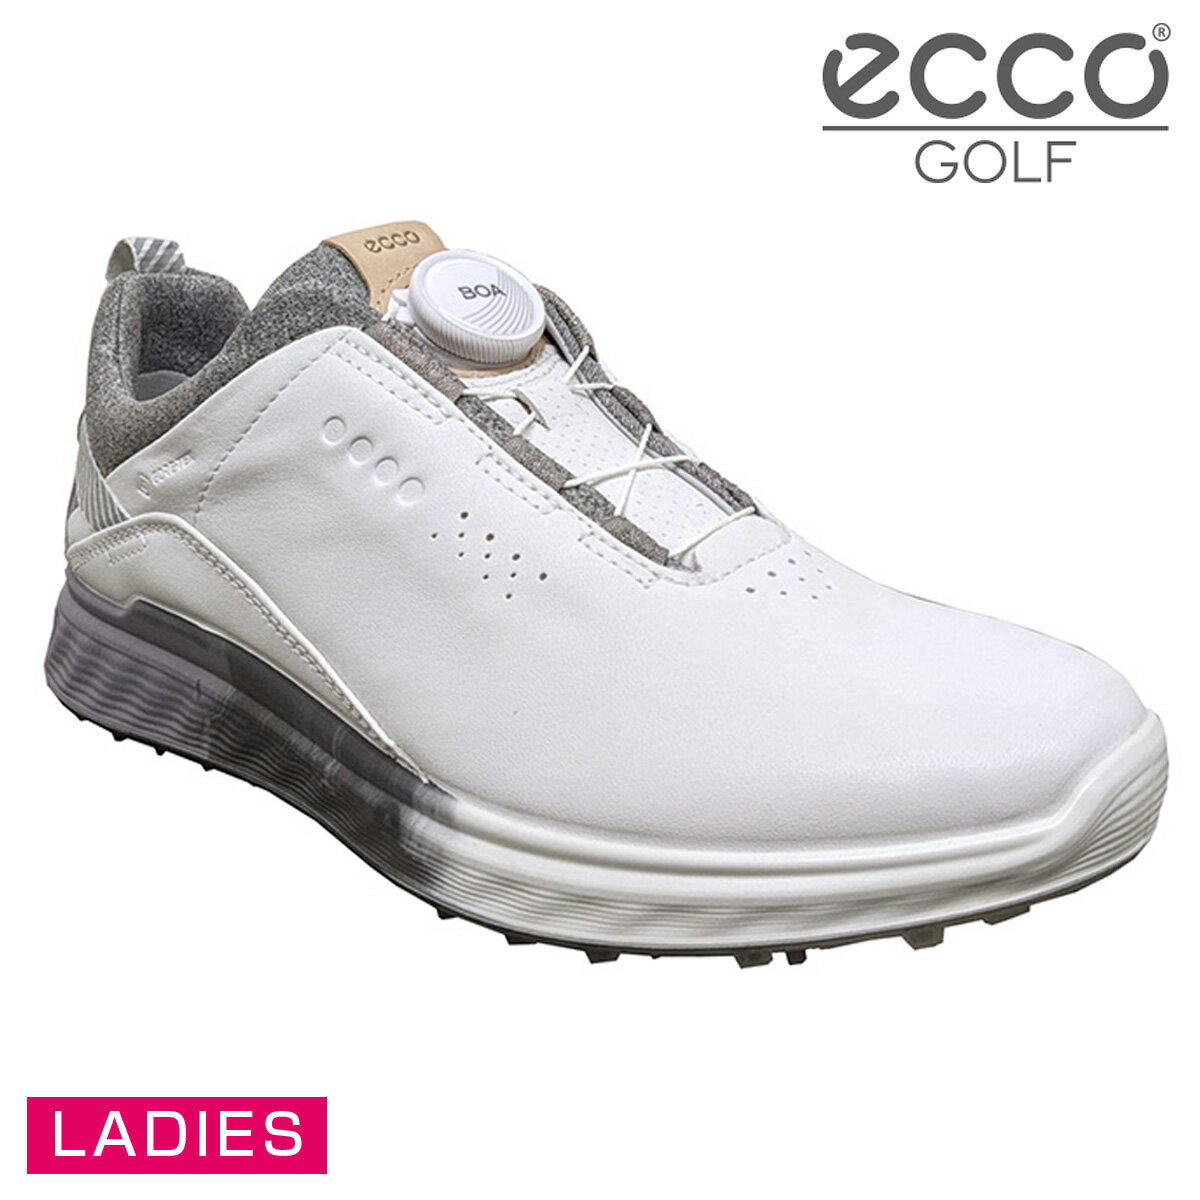 FootJoy Premiere Series - Bel Air Women Golf Shoes - Black フットジョイ プレミアシリーズ ベルエアー レディース ゴルフシューズ 99060